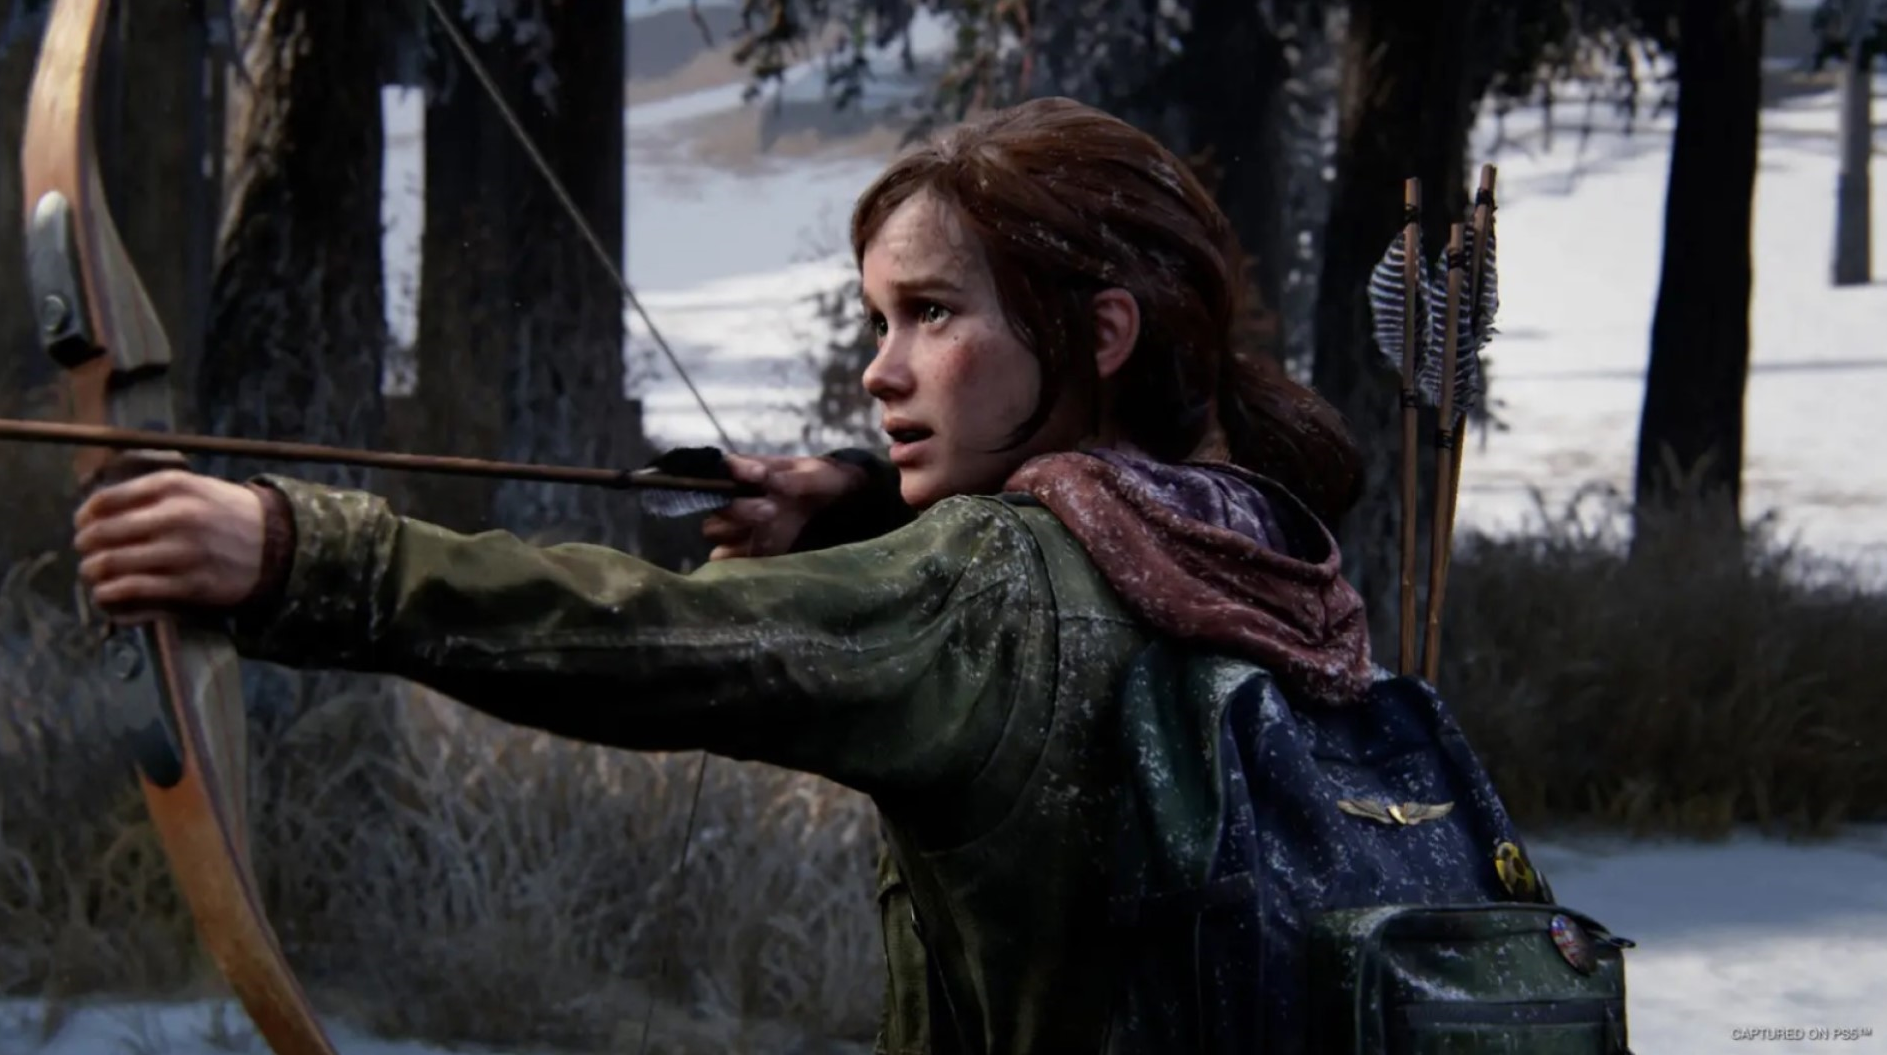 ซีรีส์ดัดแปลงจาก HBO ส่งผลให้ The Last of Us Part 1 มียอดขายเกมเพิ่มขึ้นถึง 305% ใน UK